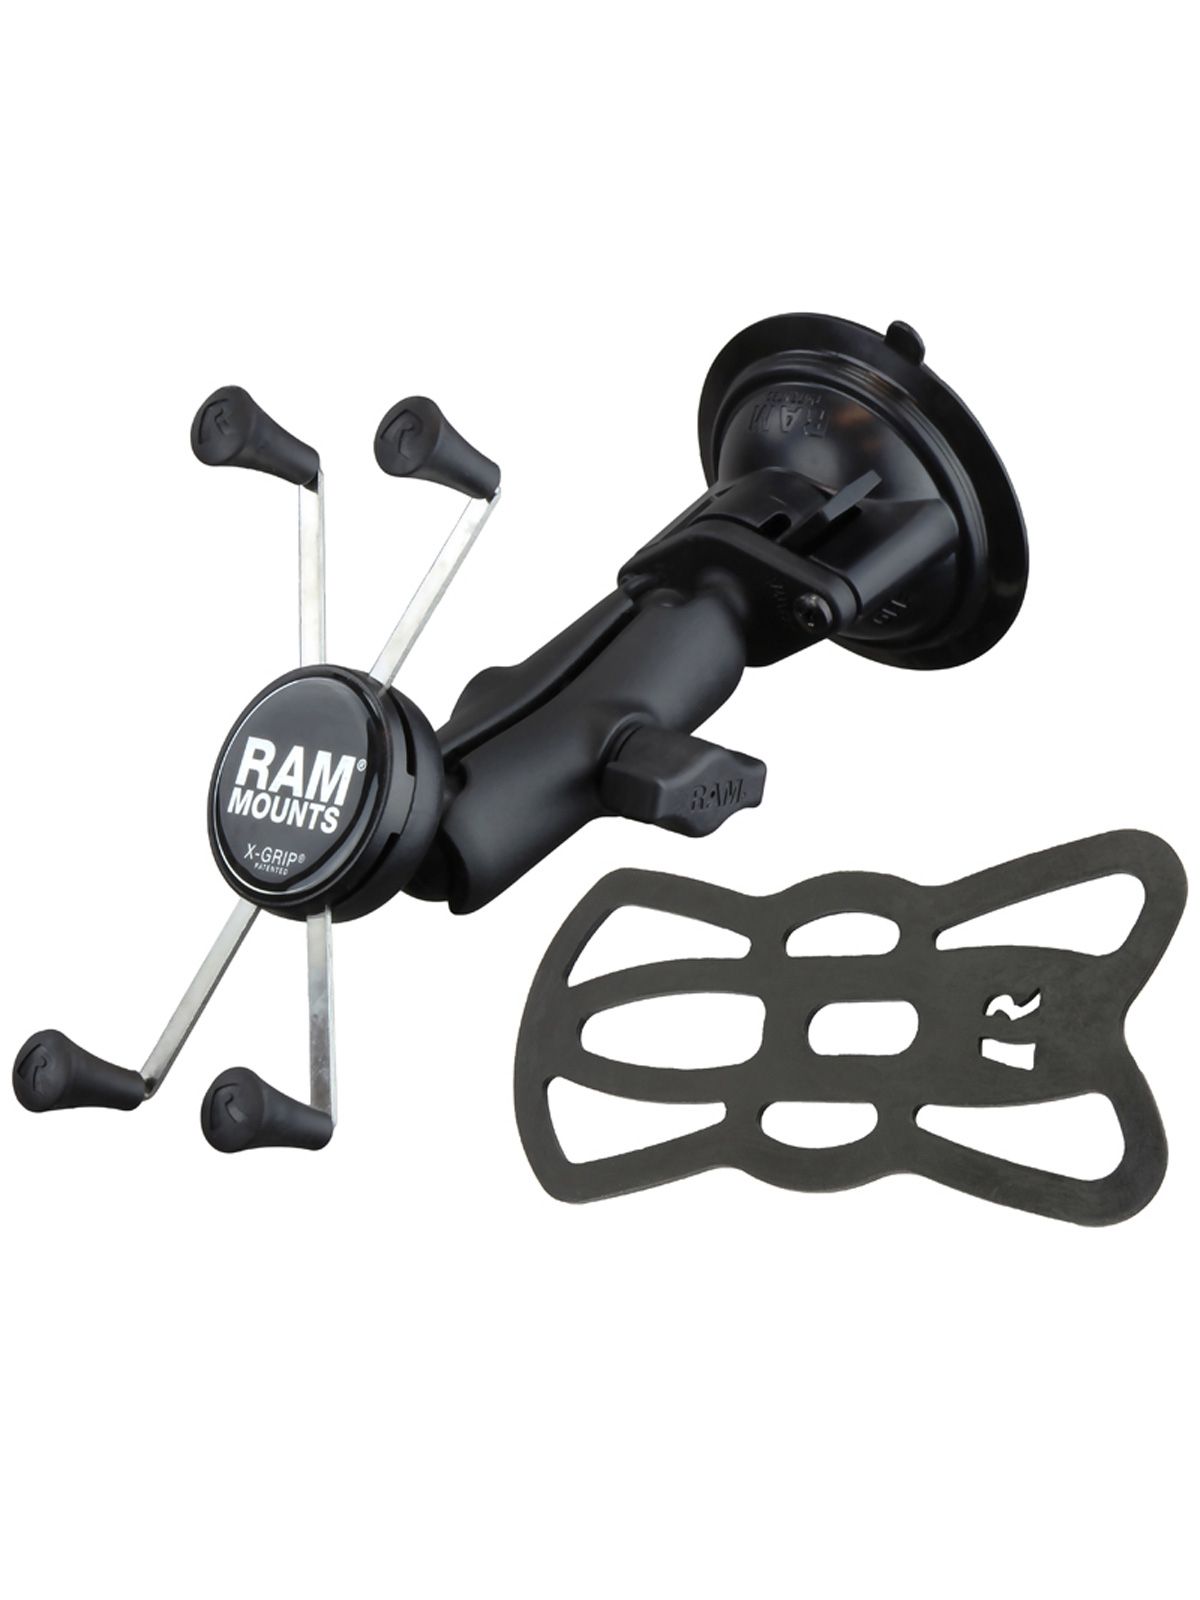 RAM Mounts X-Grip Saugfuss-Halterung für Smartphones bis 114,3 mm Breite - B-Kugel (1 Zoll), mittlerer Verbindungsarm